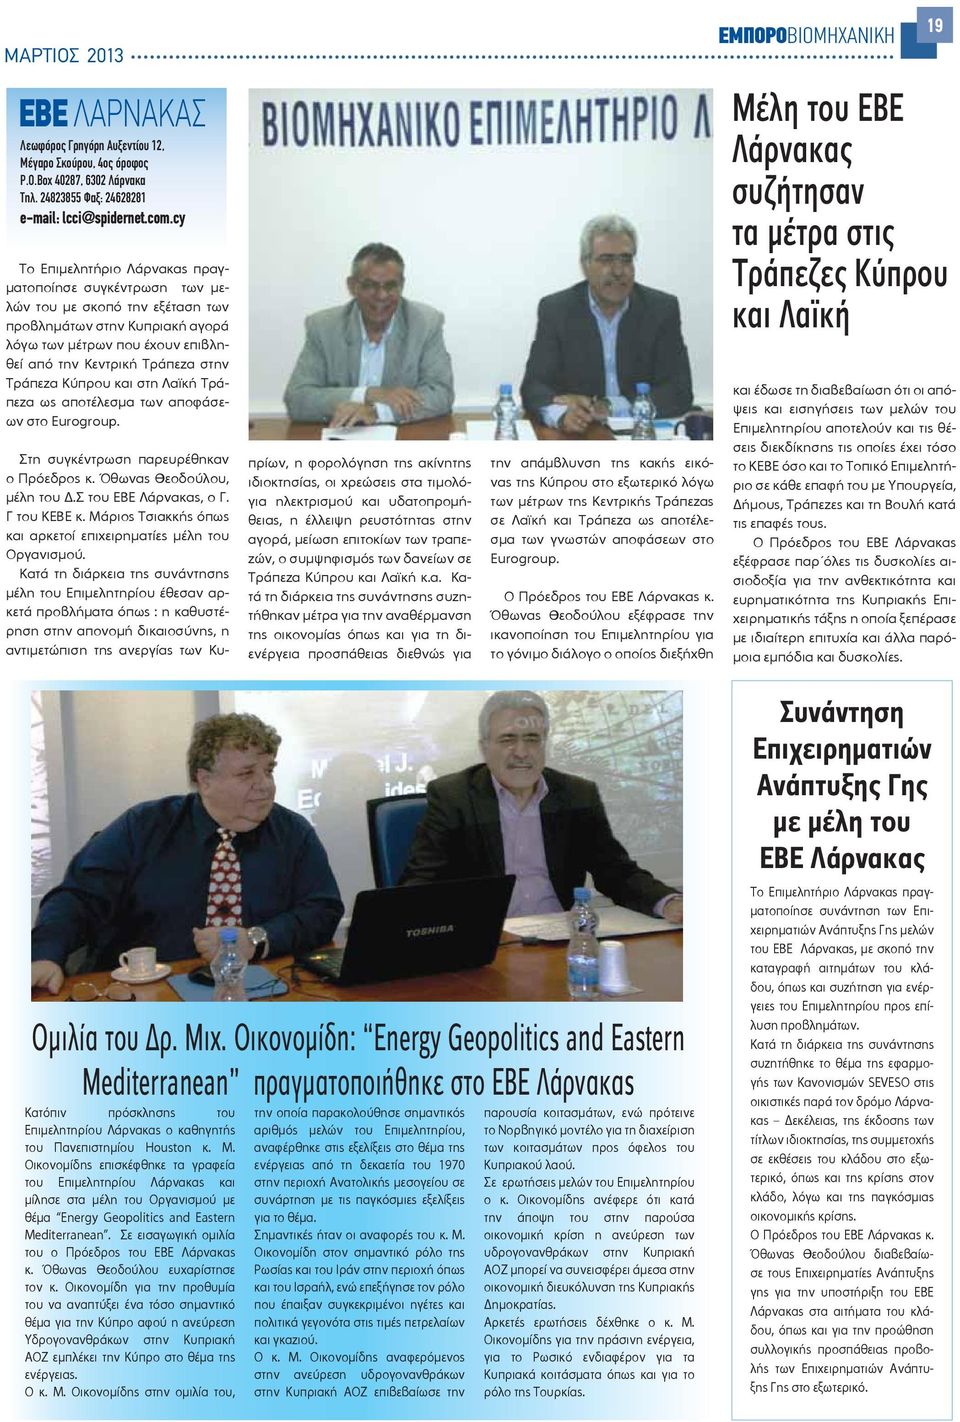 Κύπρου και στη Λαϊκή Τράπεζα ως αποτέλεσμα των αποφάσεων στο Eurogroup. Στη συγκέντρωση παρευρέθηκαν ο Πρόεδρος κ. Όθωνας Θεοδούλου, μέλη του.σ του ΕΒΕ Λάρνακας, ο Γ. Γ του ΚΕΒΕ κ.